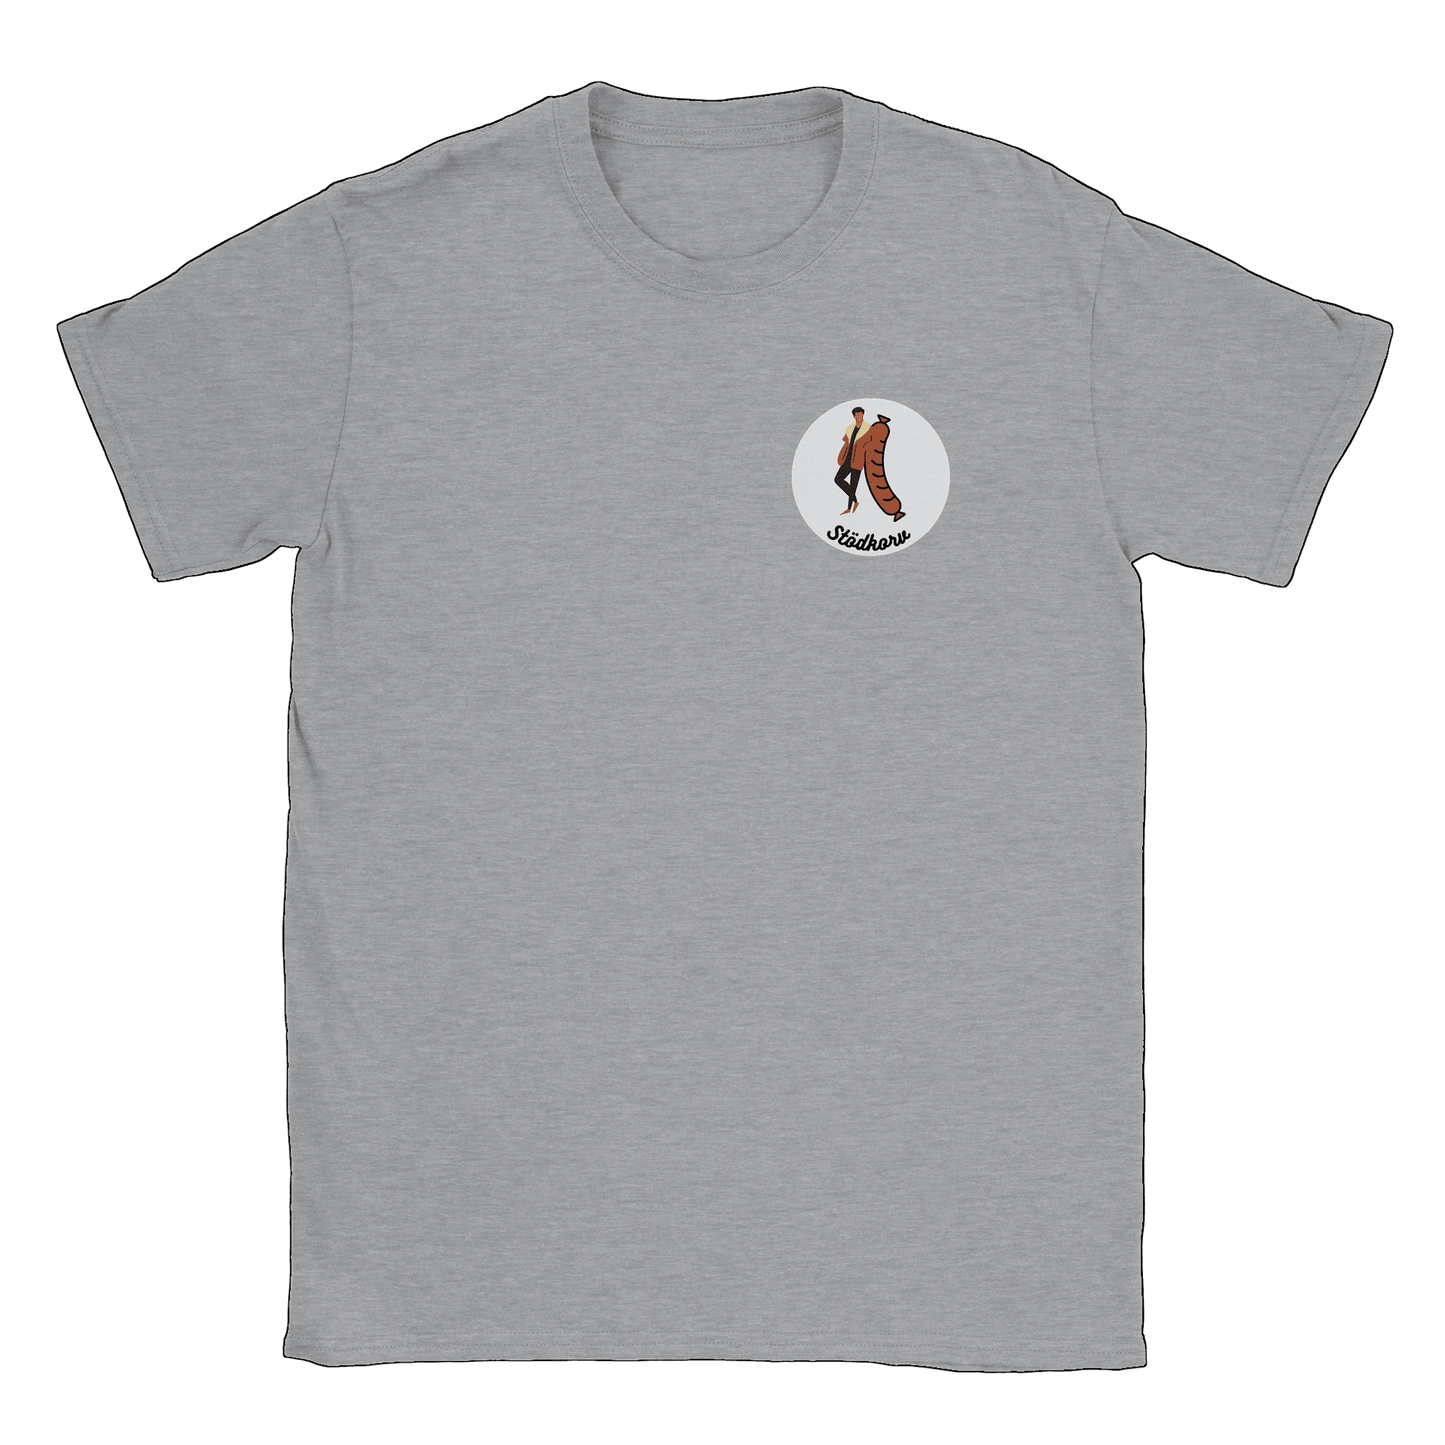 Stödkorven - T-shirt Sports Grey